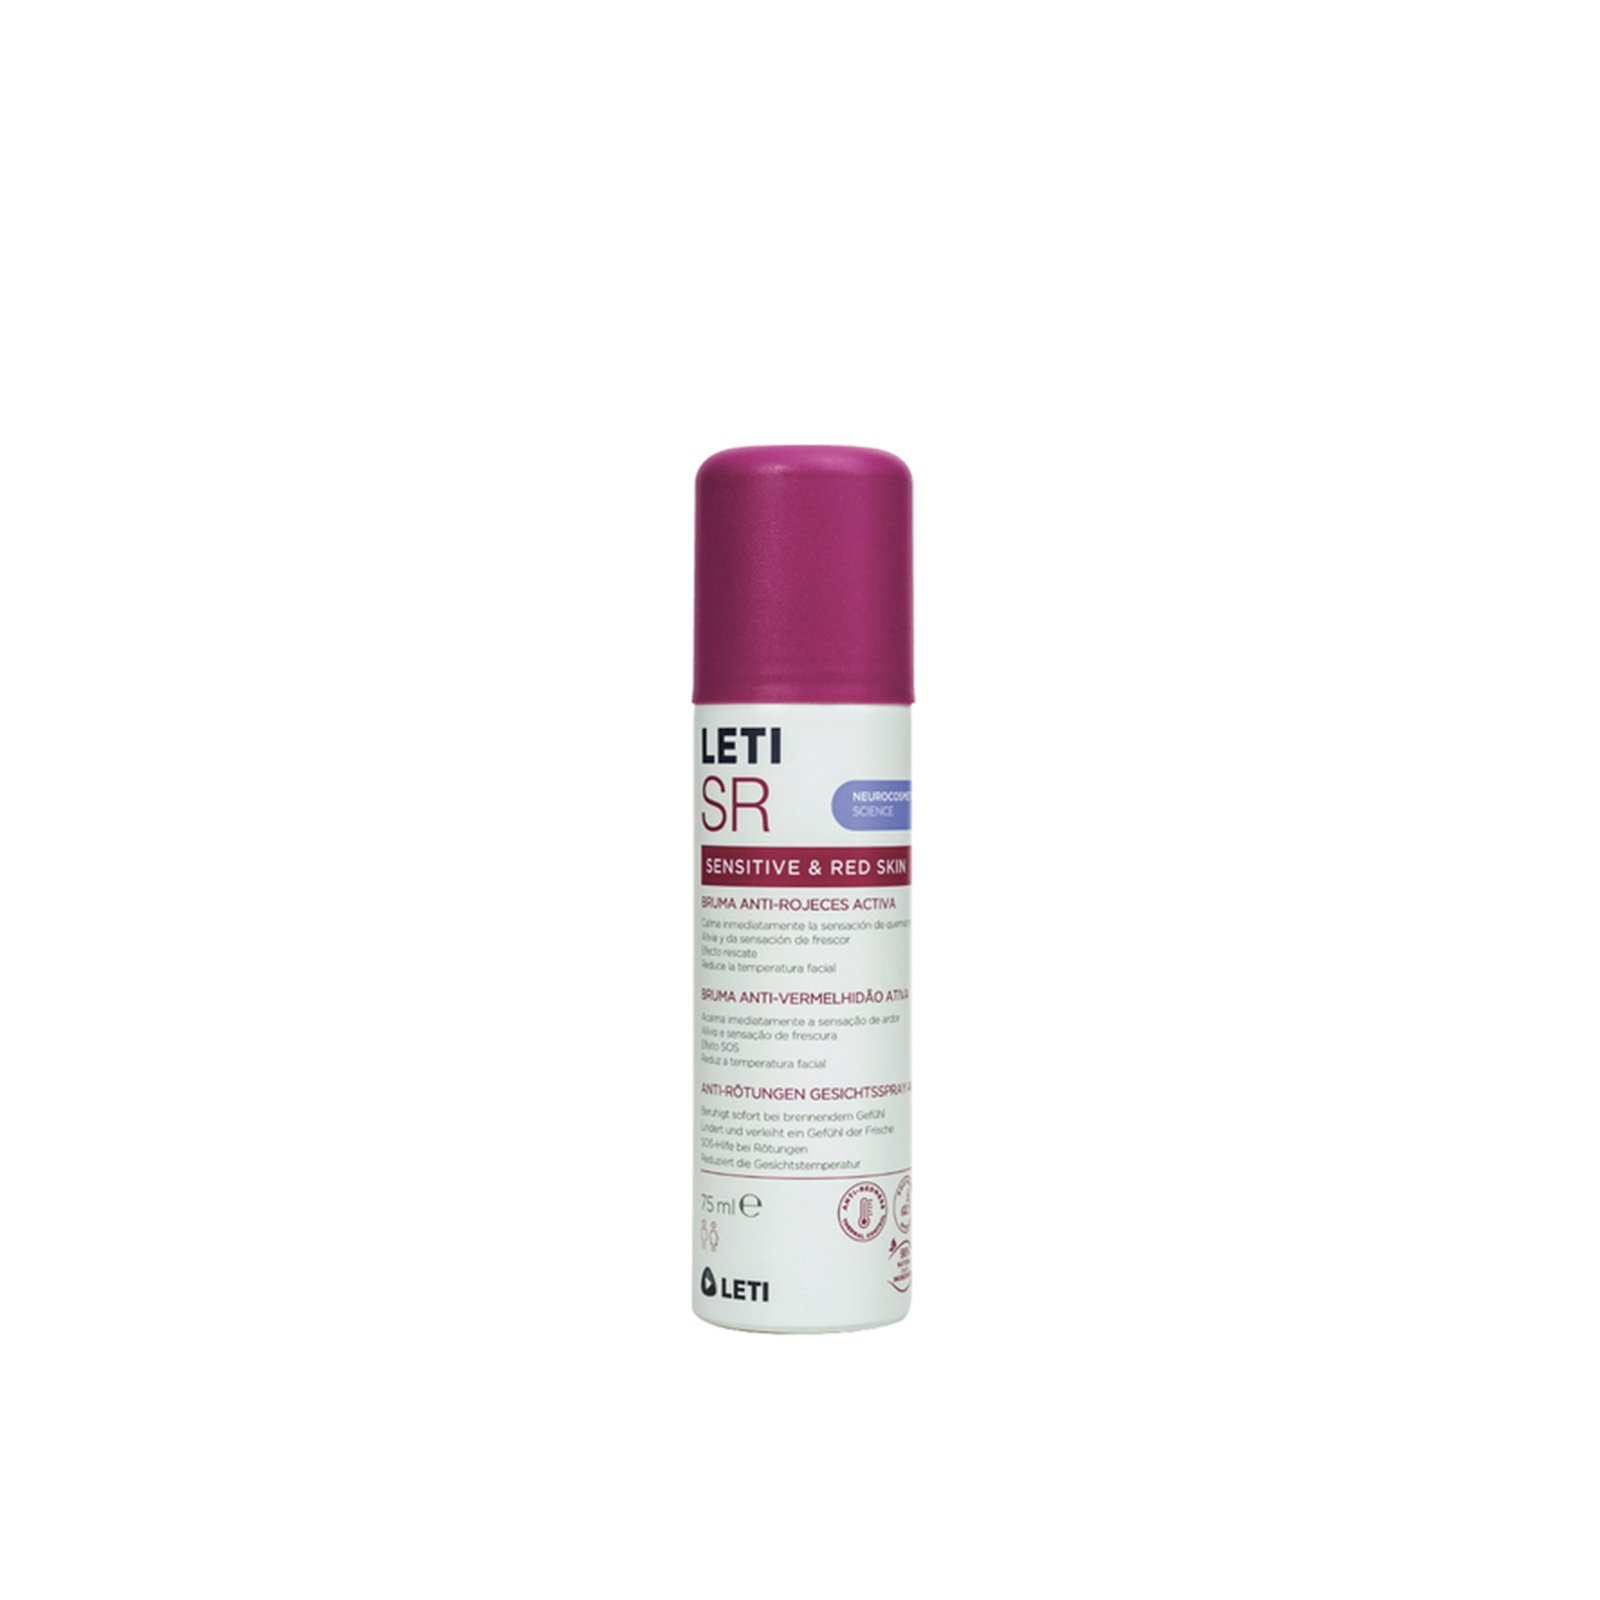 LETI SR Active Anti-Redness Mist 75ml (2.54 fl oz)